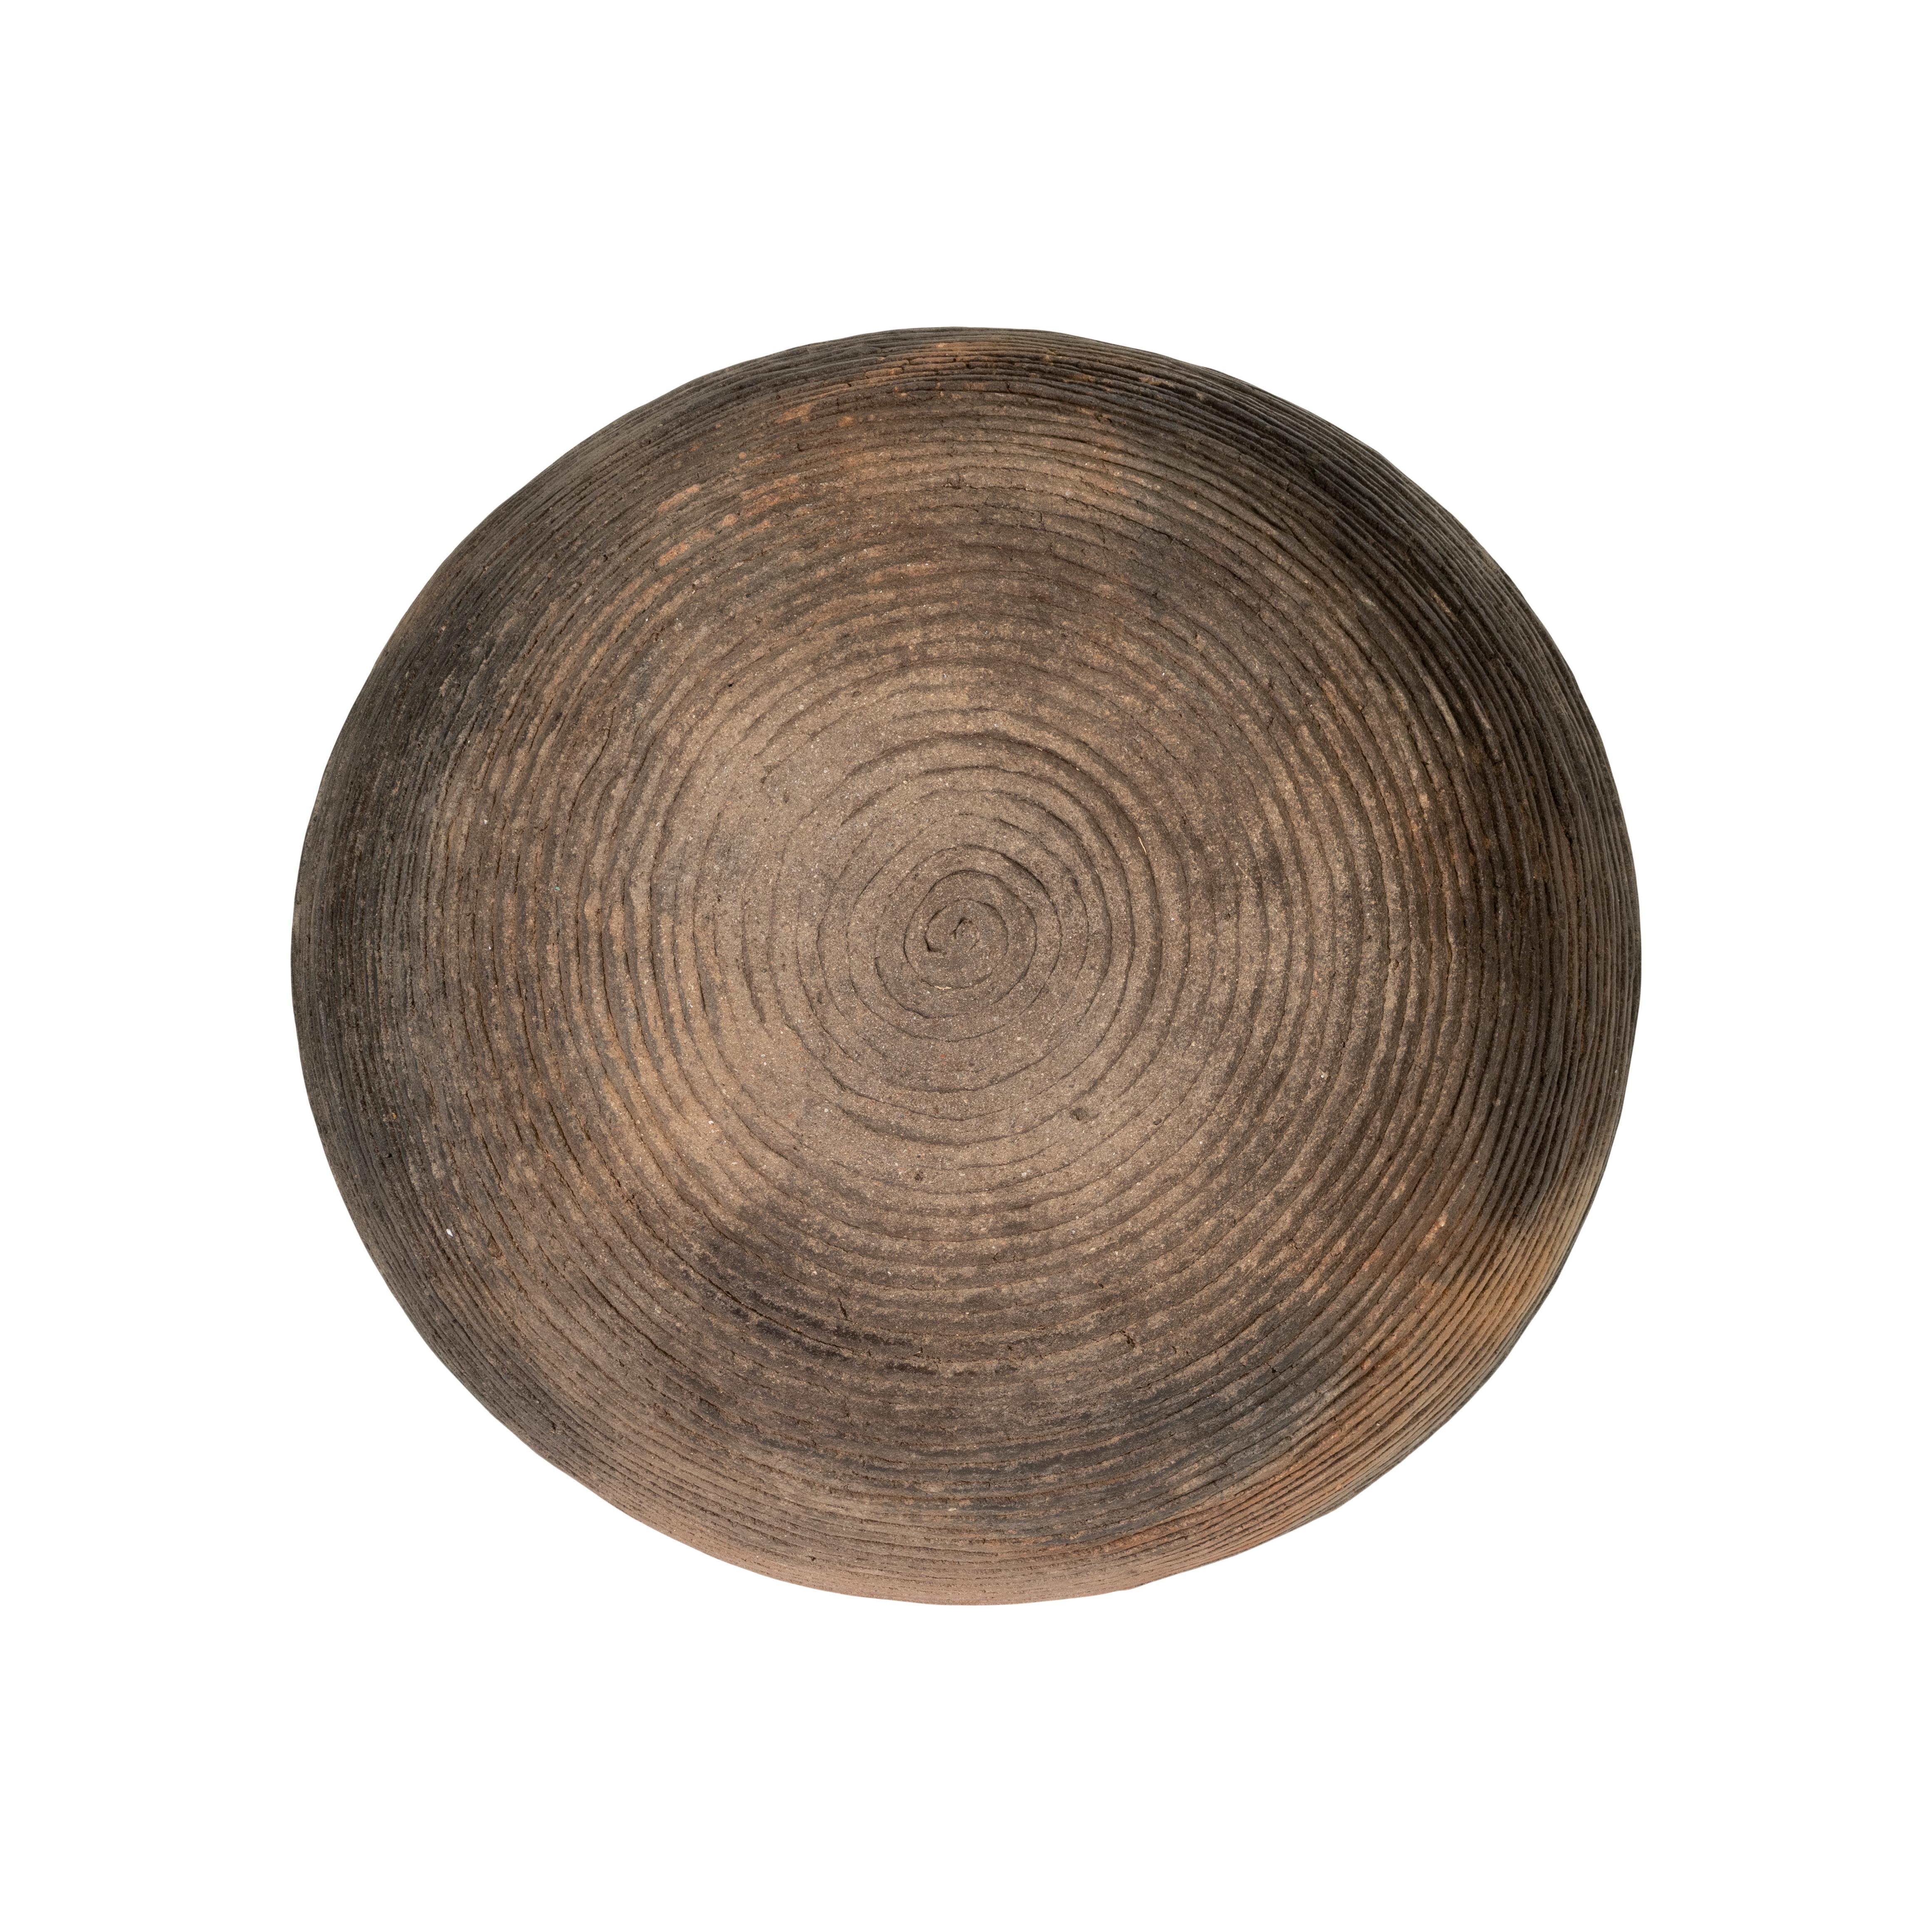 Bol en poterie préhistorique de Condit en l'état. La région de Mimbres, dans le sud-ouest américain, est célèbre pour la beauté et l'expressivité des poteries noir sur blanc qui y ont été fabriquées dans un passé lointain. Les archéologues utilisent